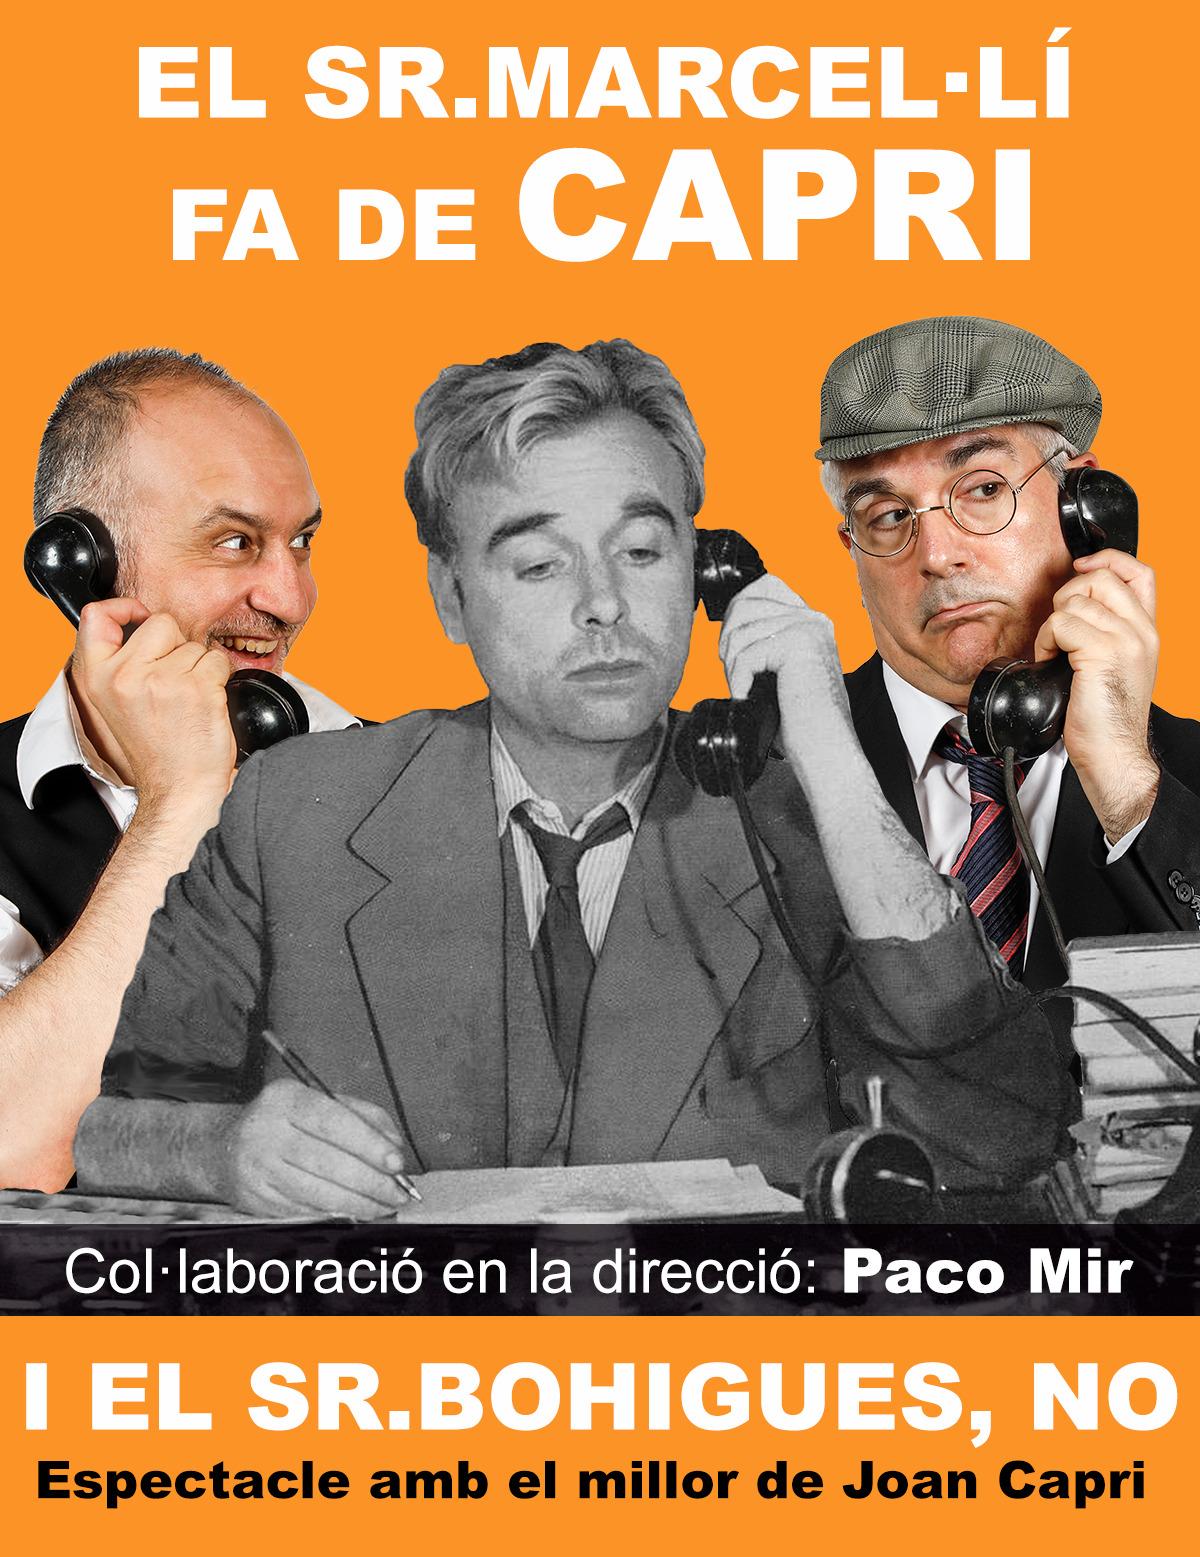 El Sr. Marcel·lí fa de Capri i el Sr. Bohigues, no, en Girona